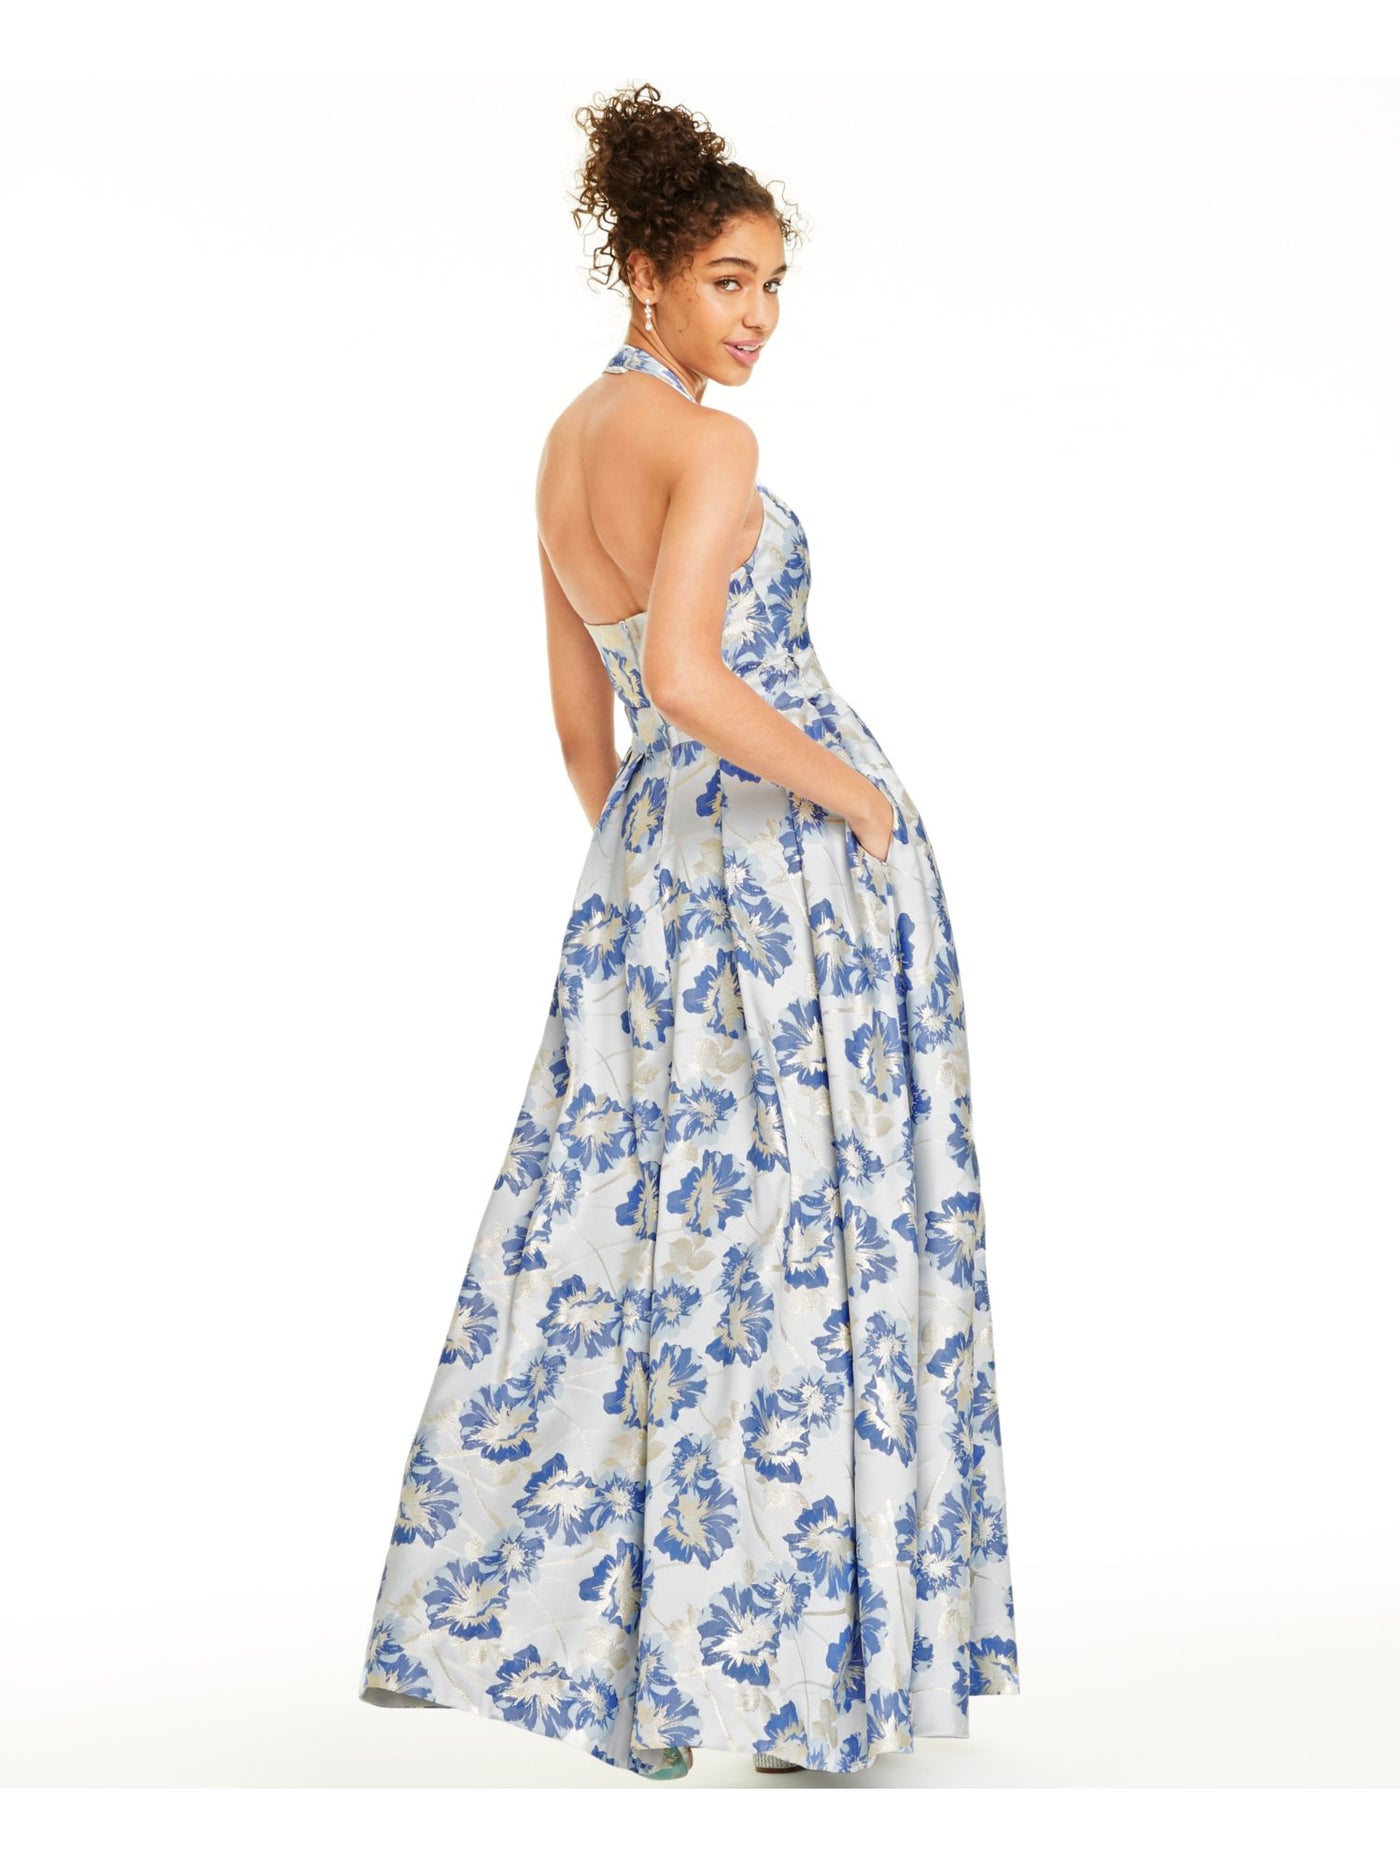 SPEECHLESS Womens Blue Floral Sleeveless V Neck Full-Length  Fit + Flare Prom Dress Juniors 3